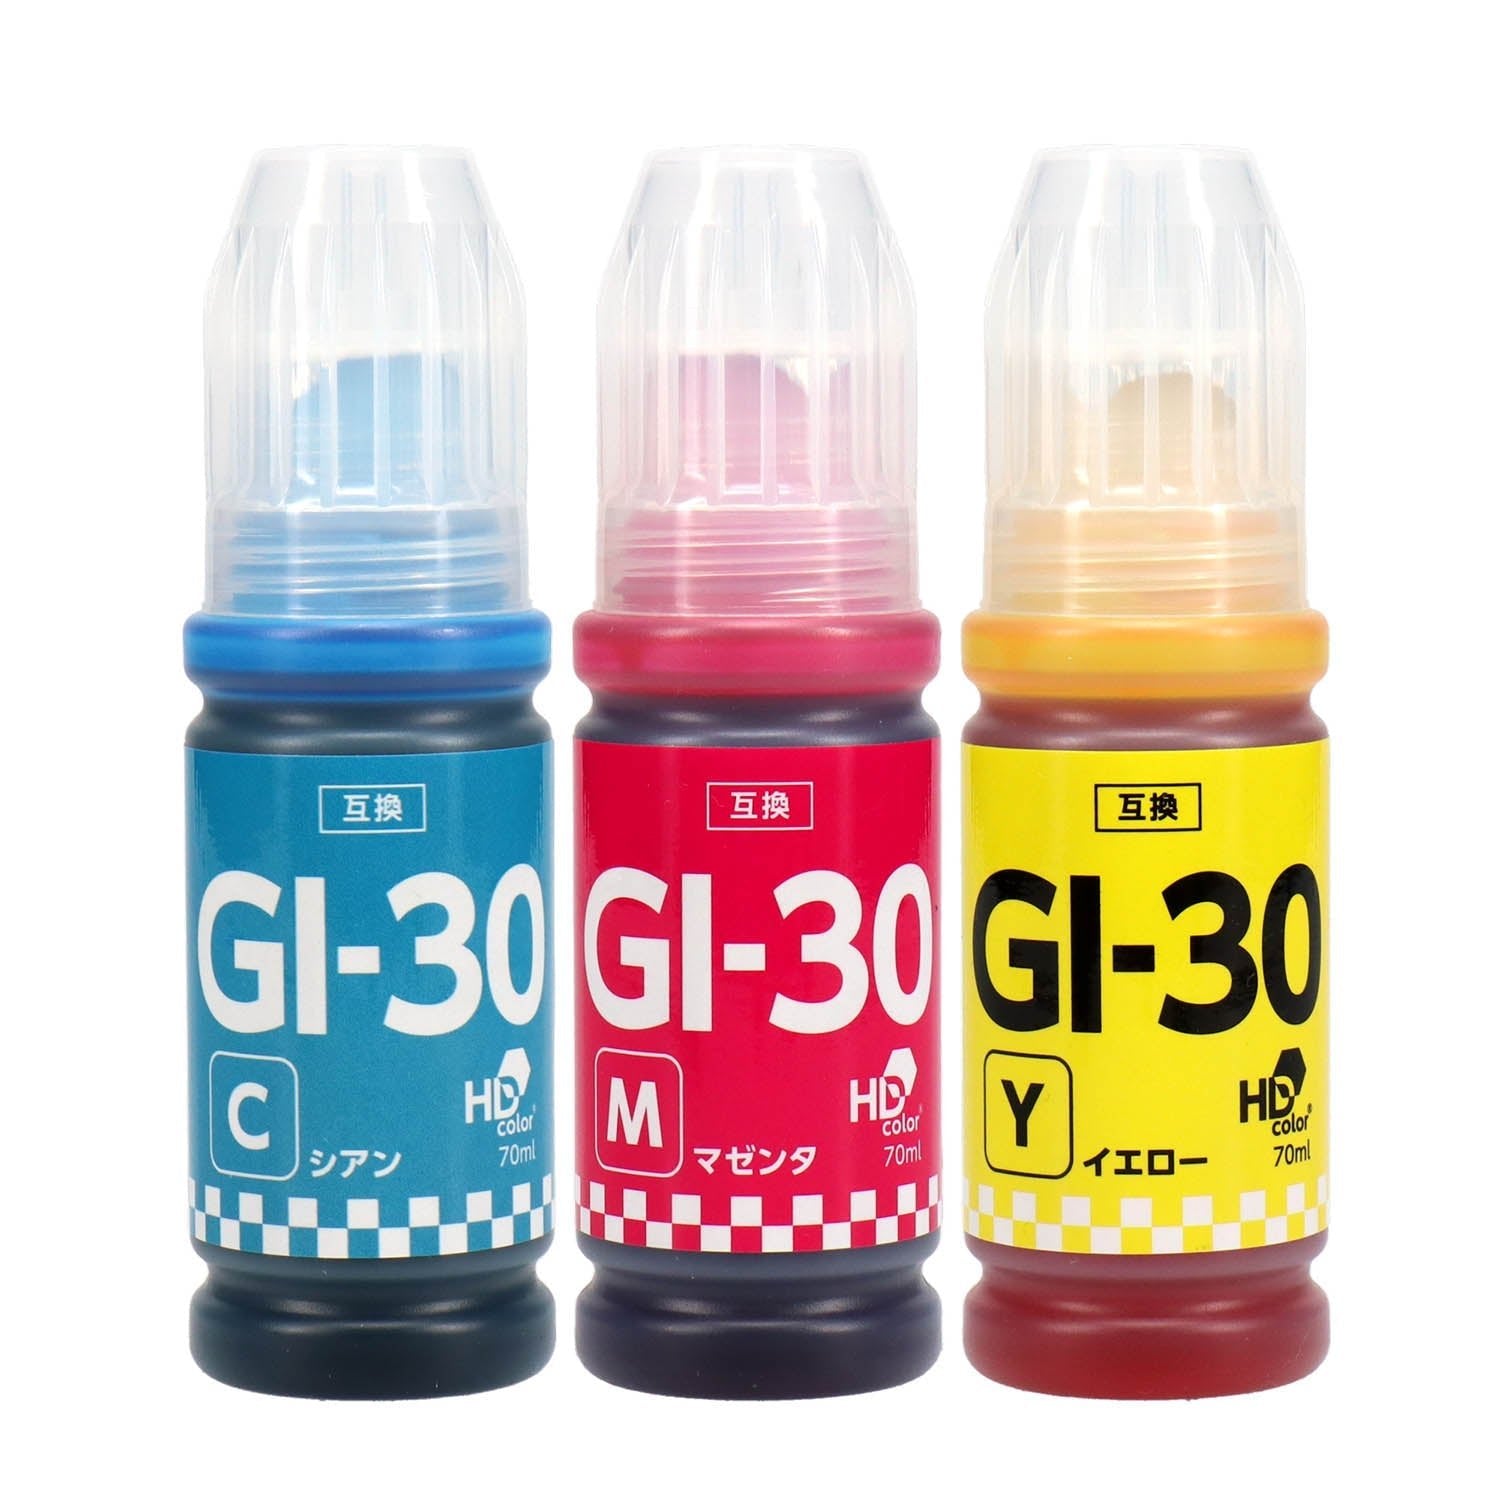 キヤノン用 GI-30 互換インクボトル カラー3色